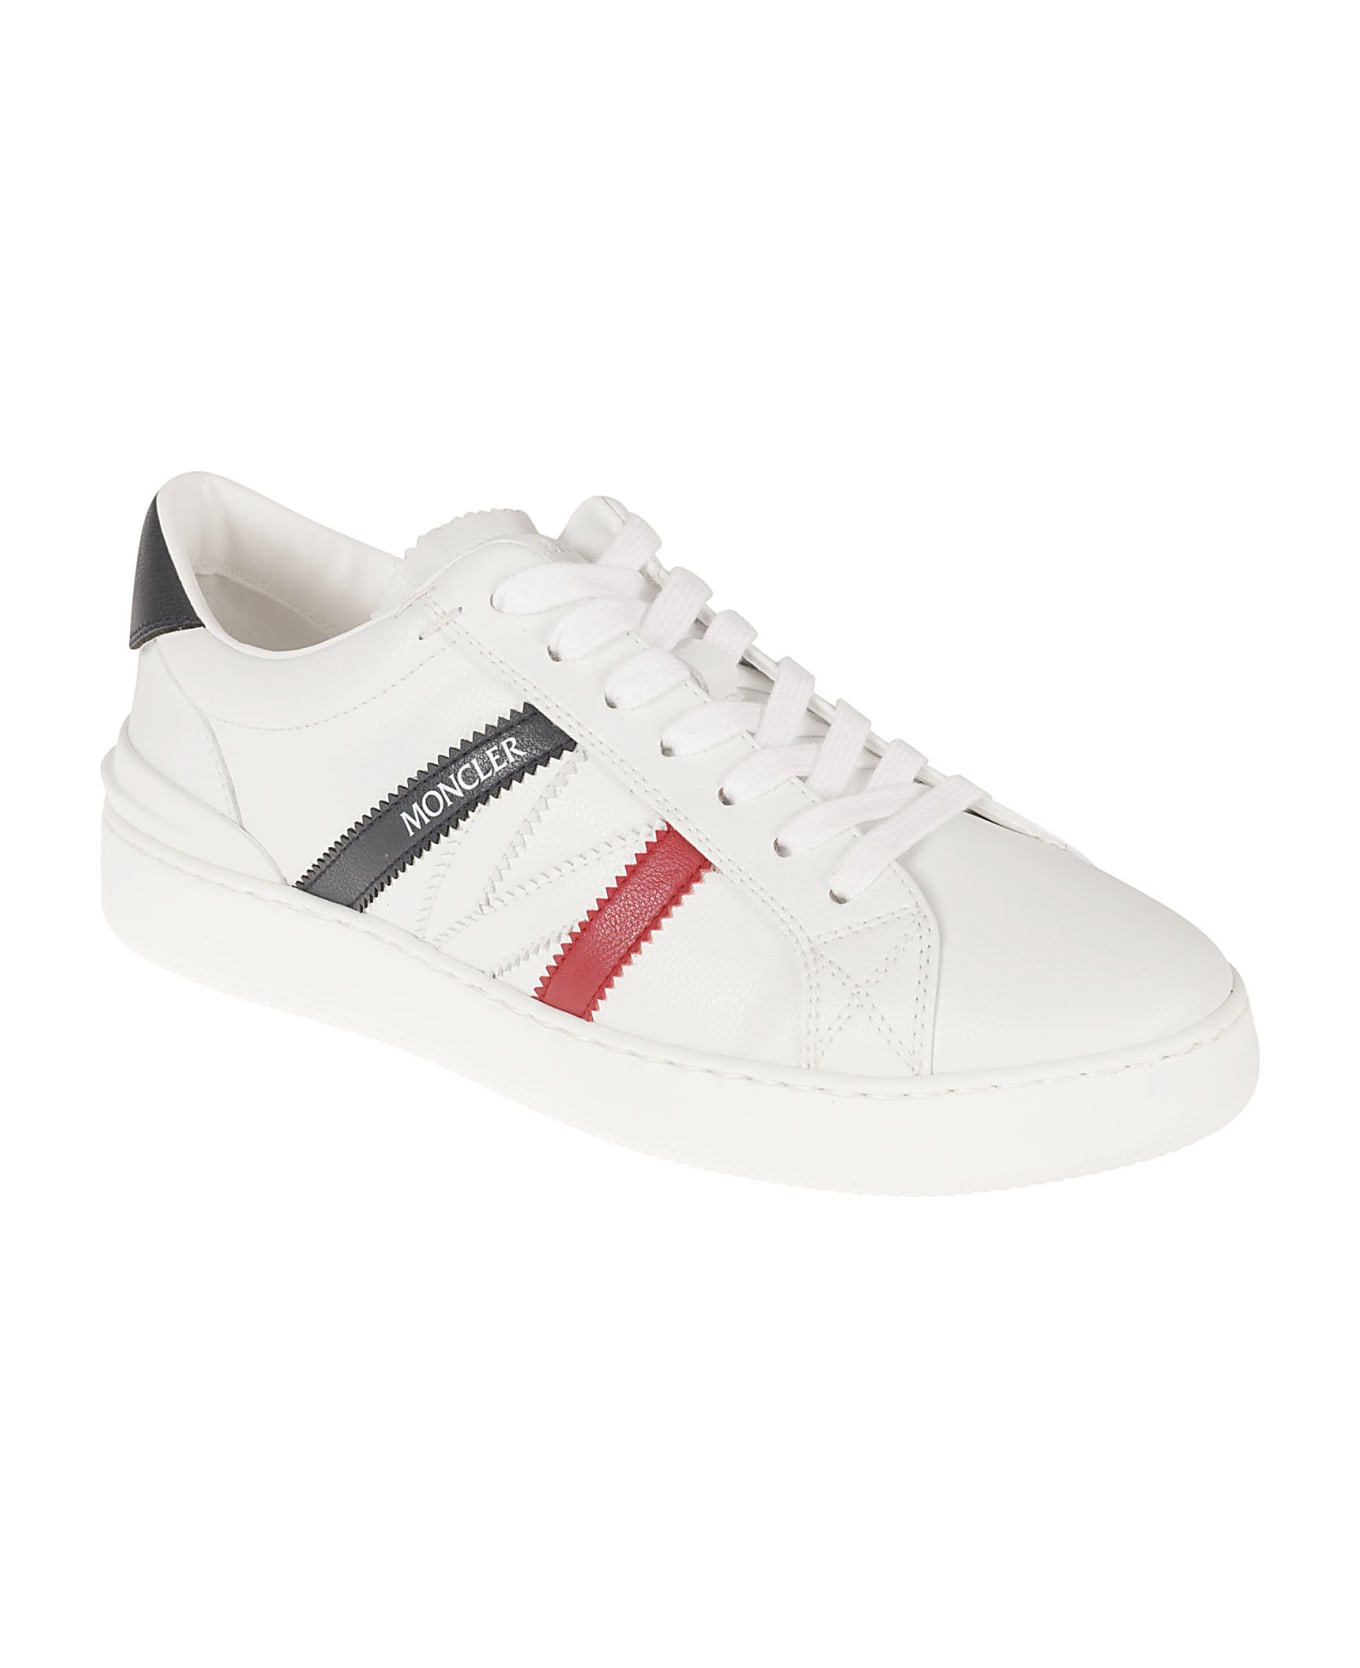 Moncler Monaco Sneakers - White